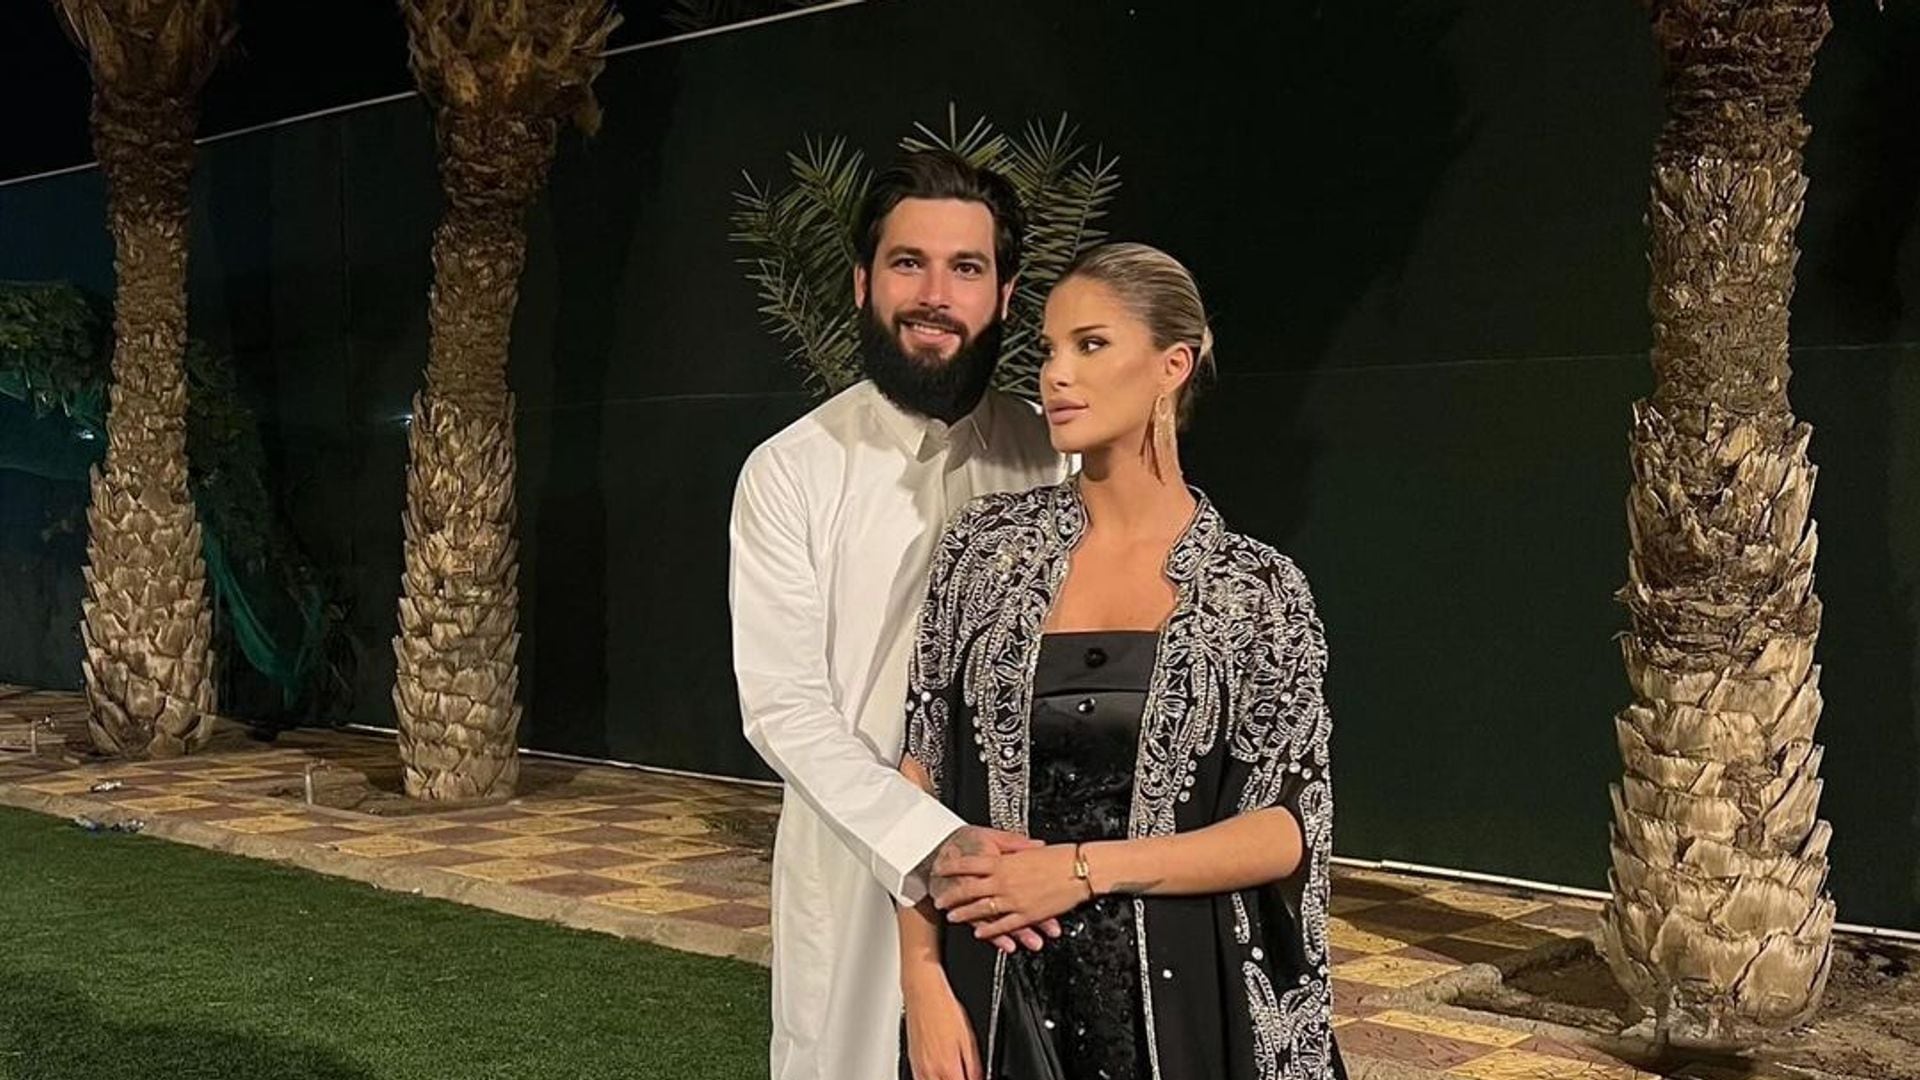 La boda sorpresa de Jota Peleteiro con la modelo Ajla Etemovic en Arabia Saudí 5 meses después de su conversión al Islam